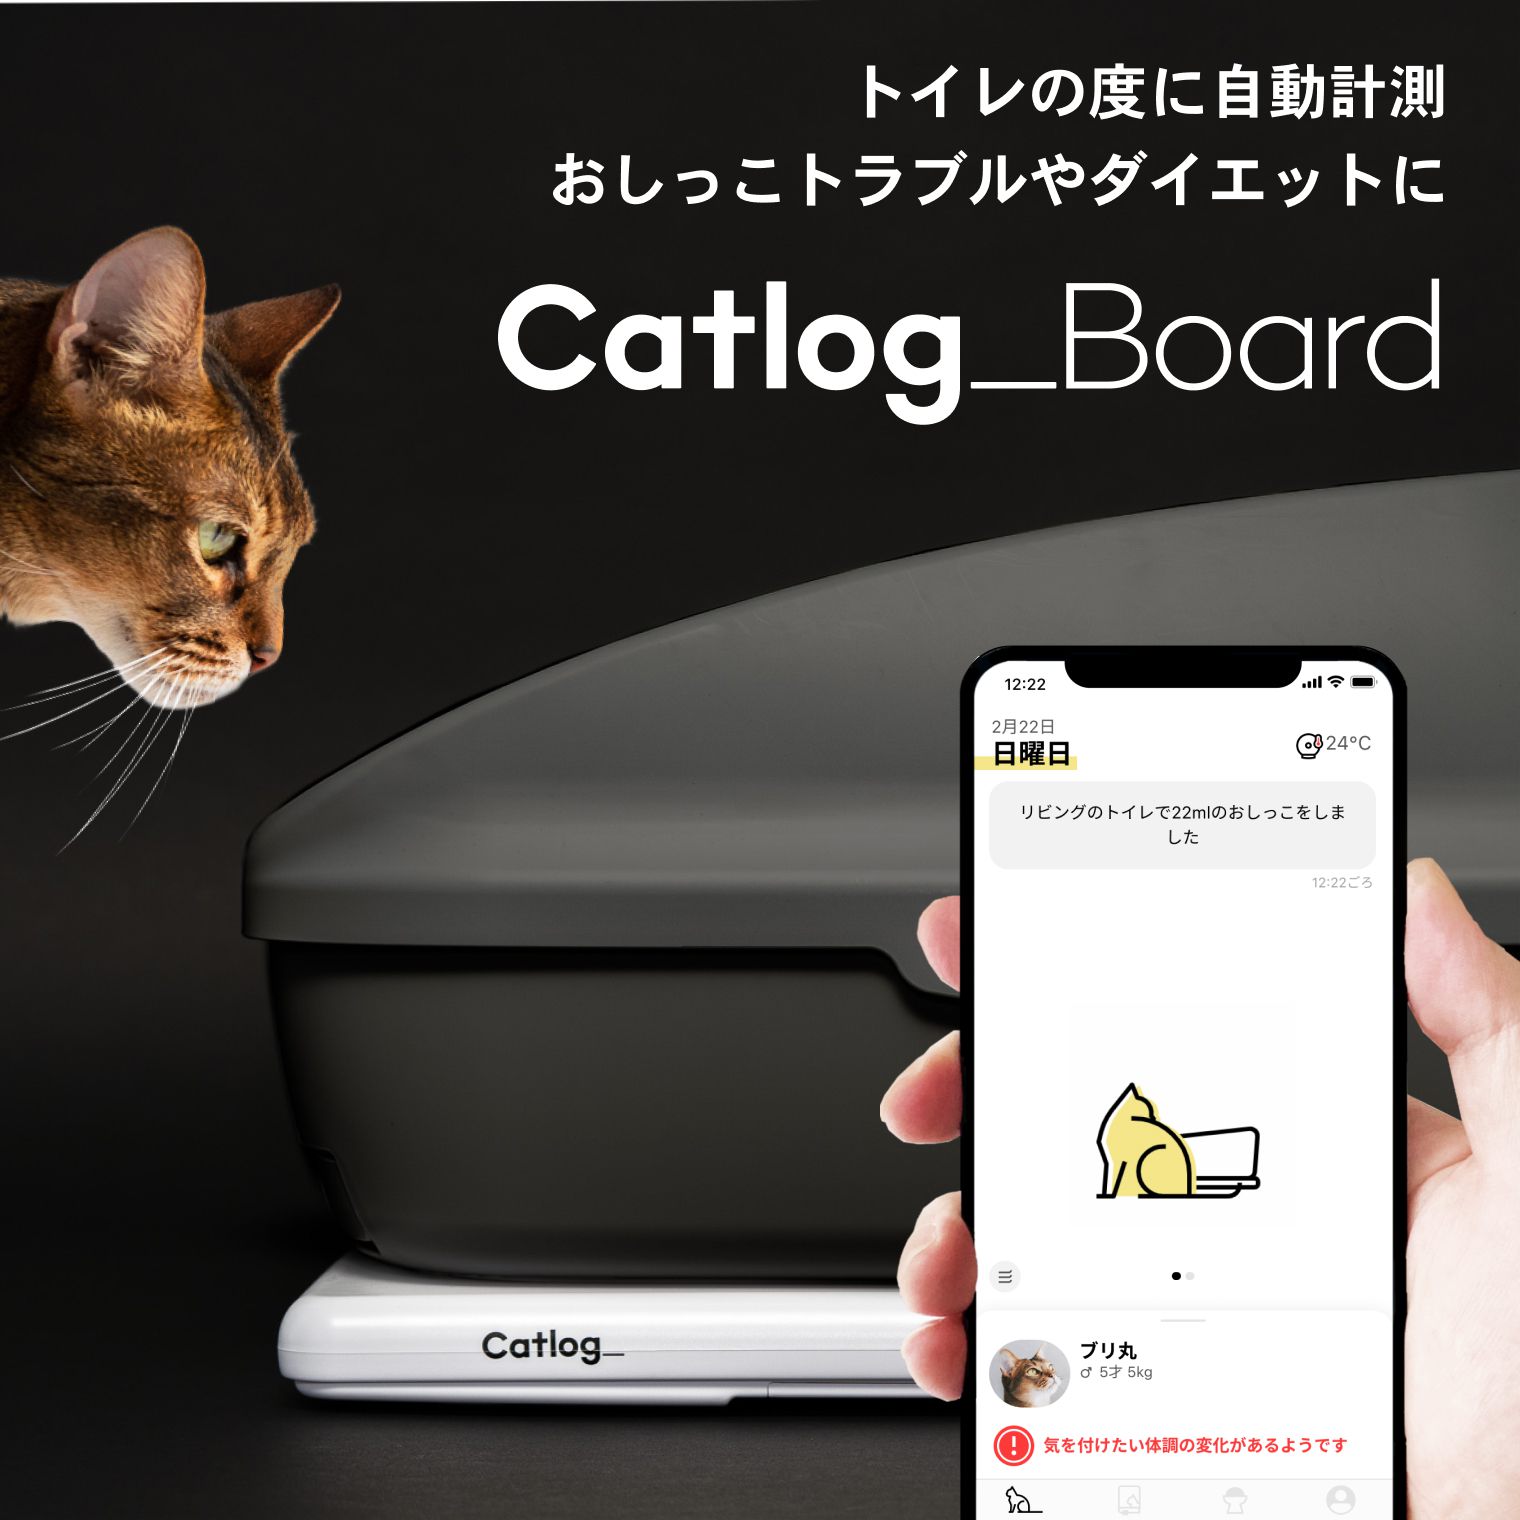 Catlog Board キャットログ 新品未使用 IoT 猫トイレ - 猫用品